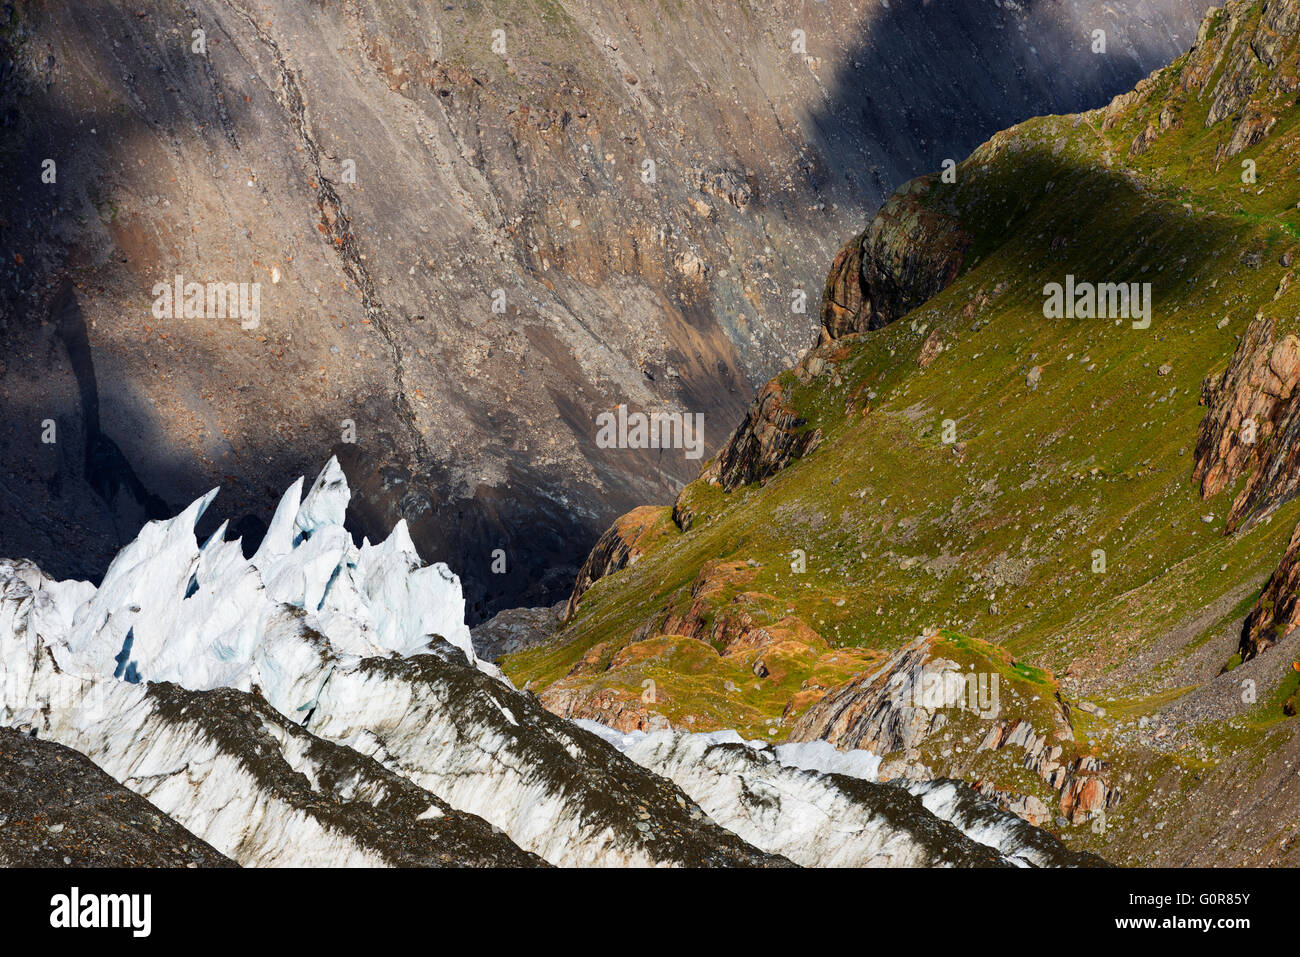 Europe, Switzerland, Bernese Oberland, Interlaken, Gletscher glacier above Grindelwald Stock Photo